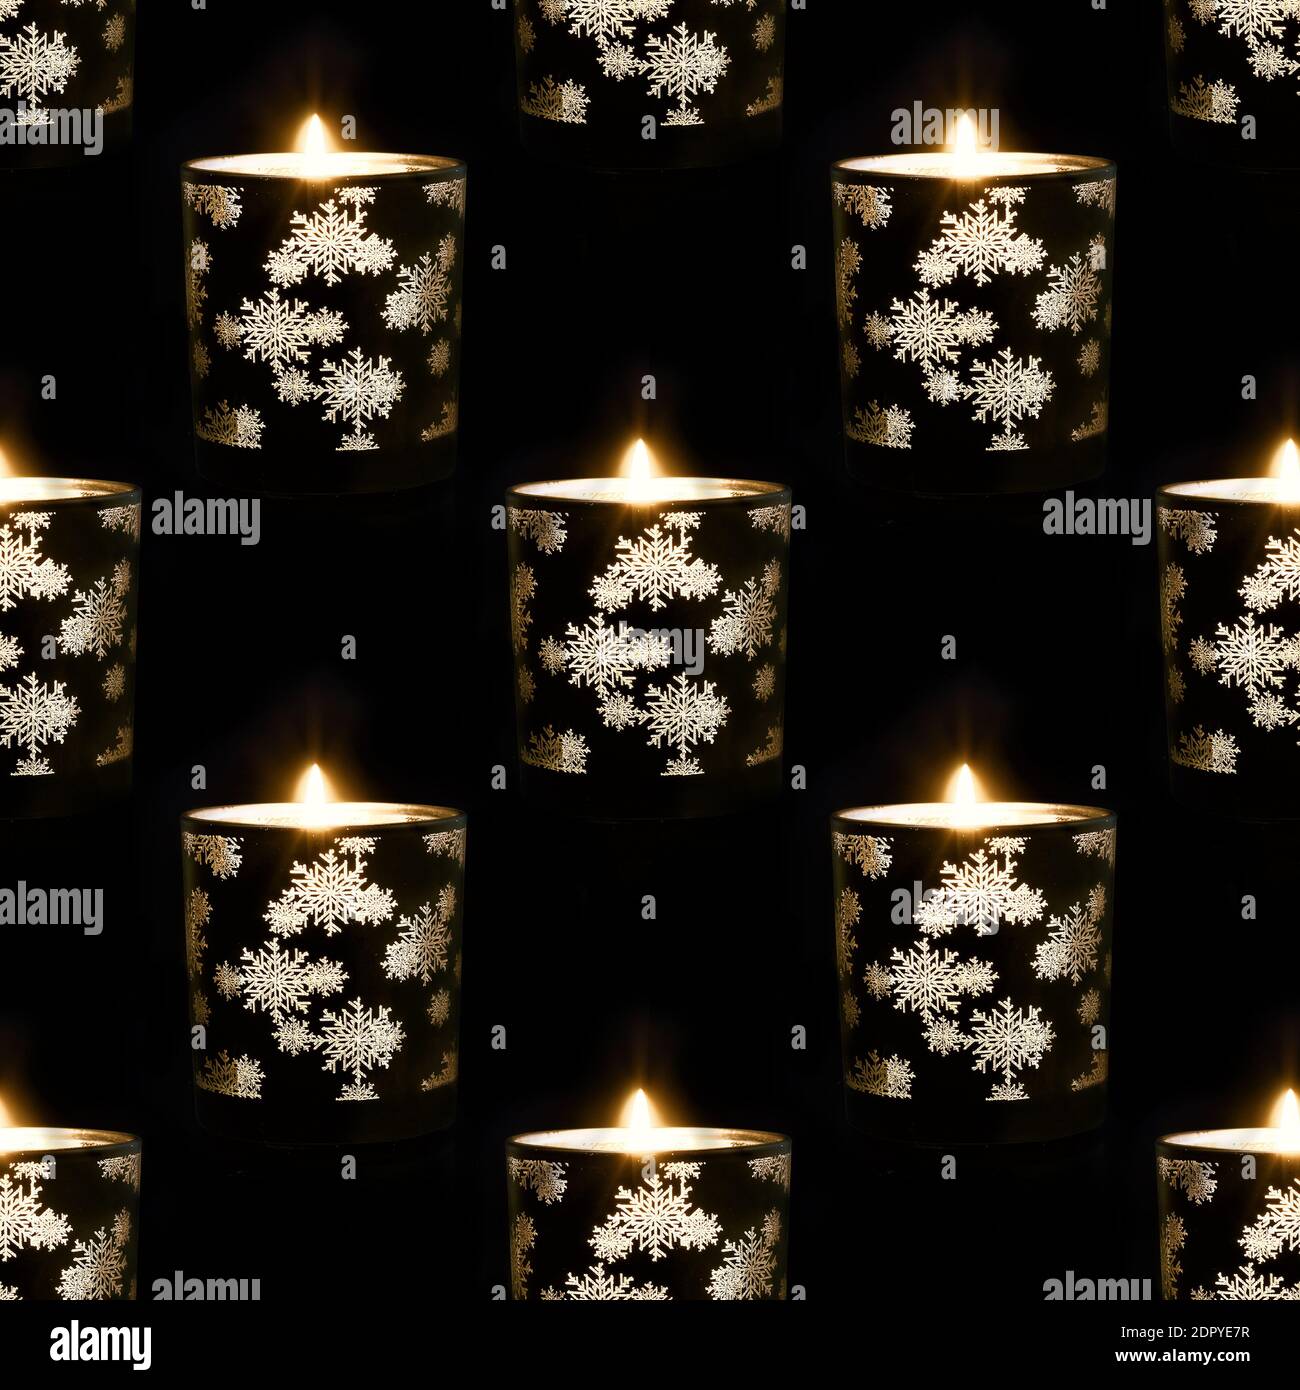 Fond transparent avec bougies de Noël allumées sur fond noir Banque D'Images